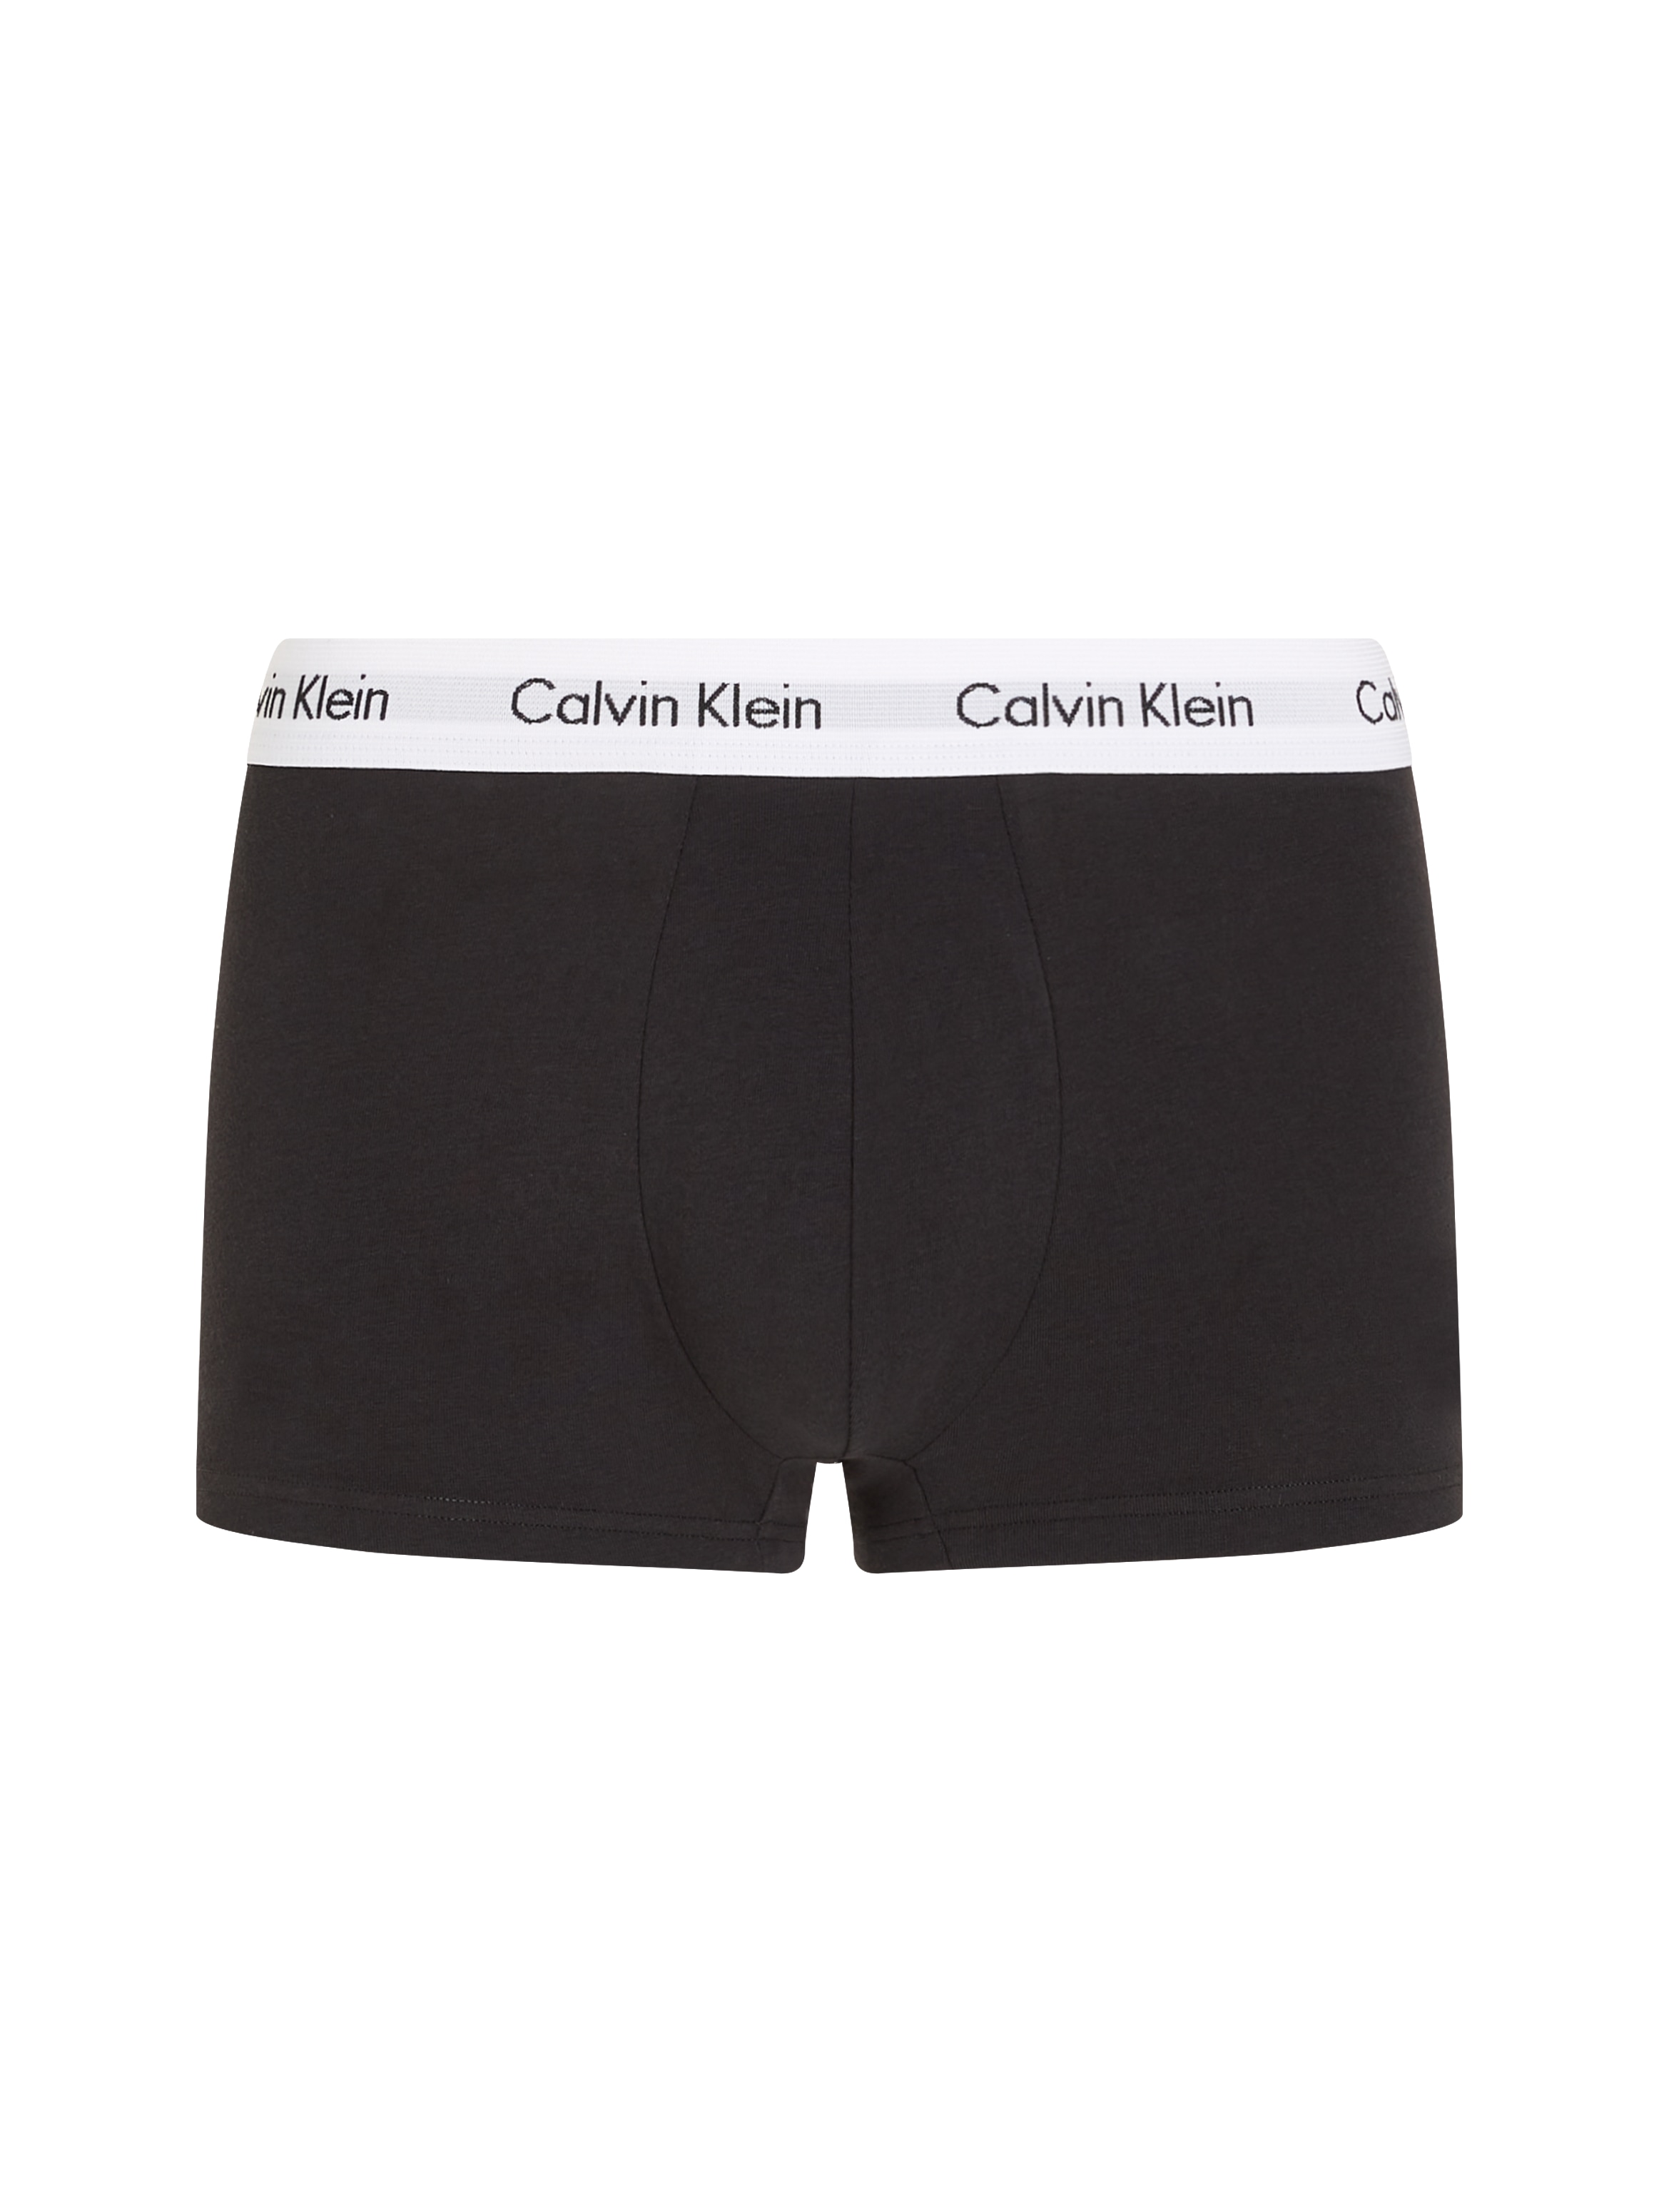 Calvin Klein Underwear Hipster, (3 St.), mit weißem Webbund